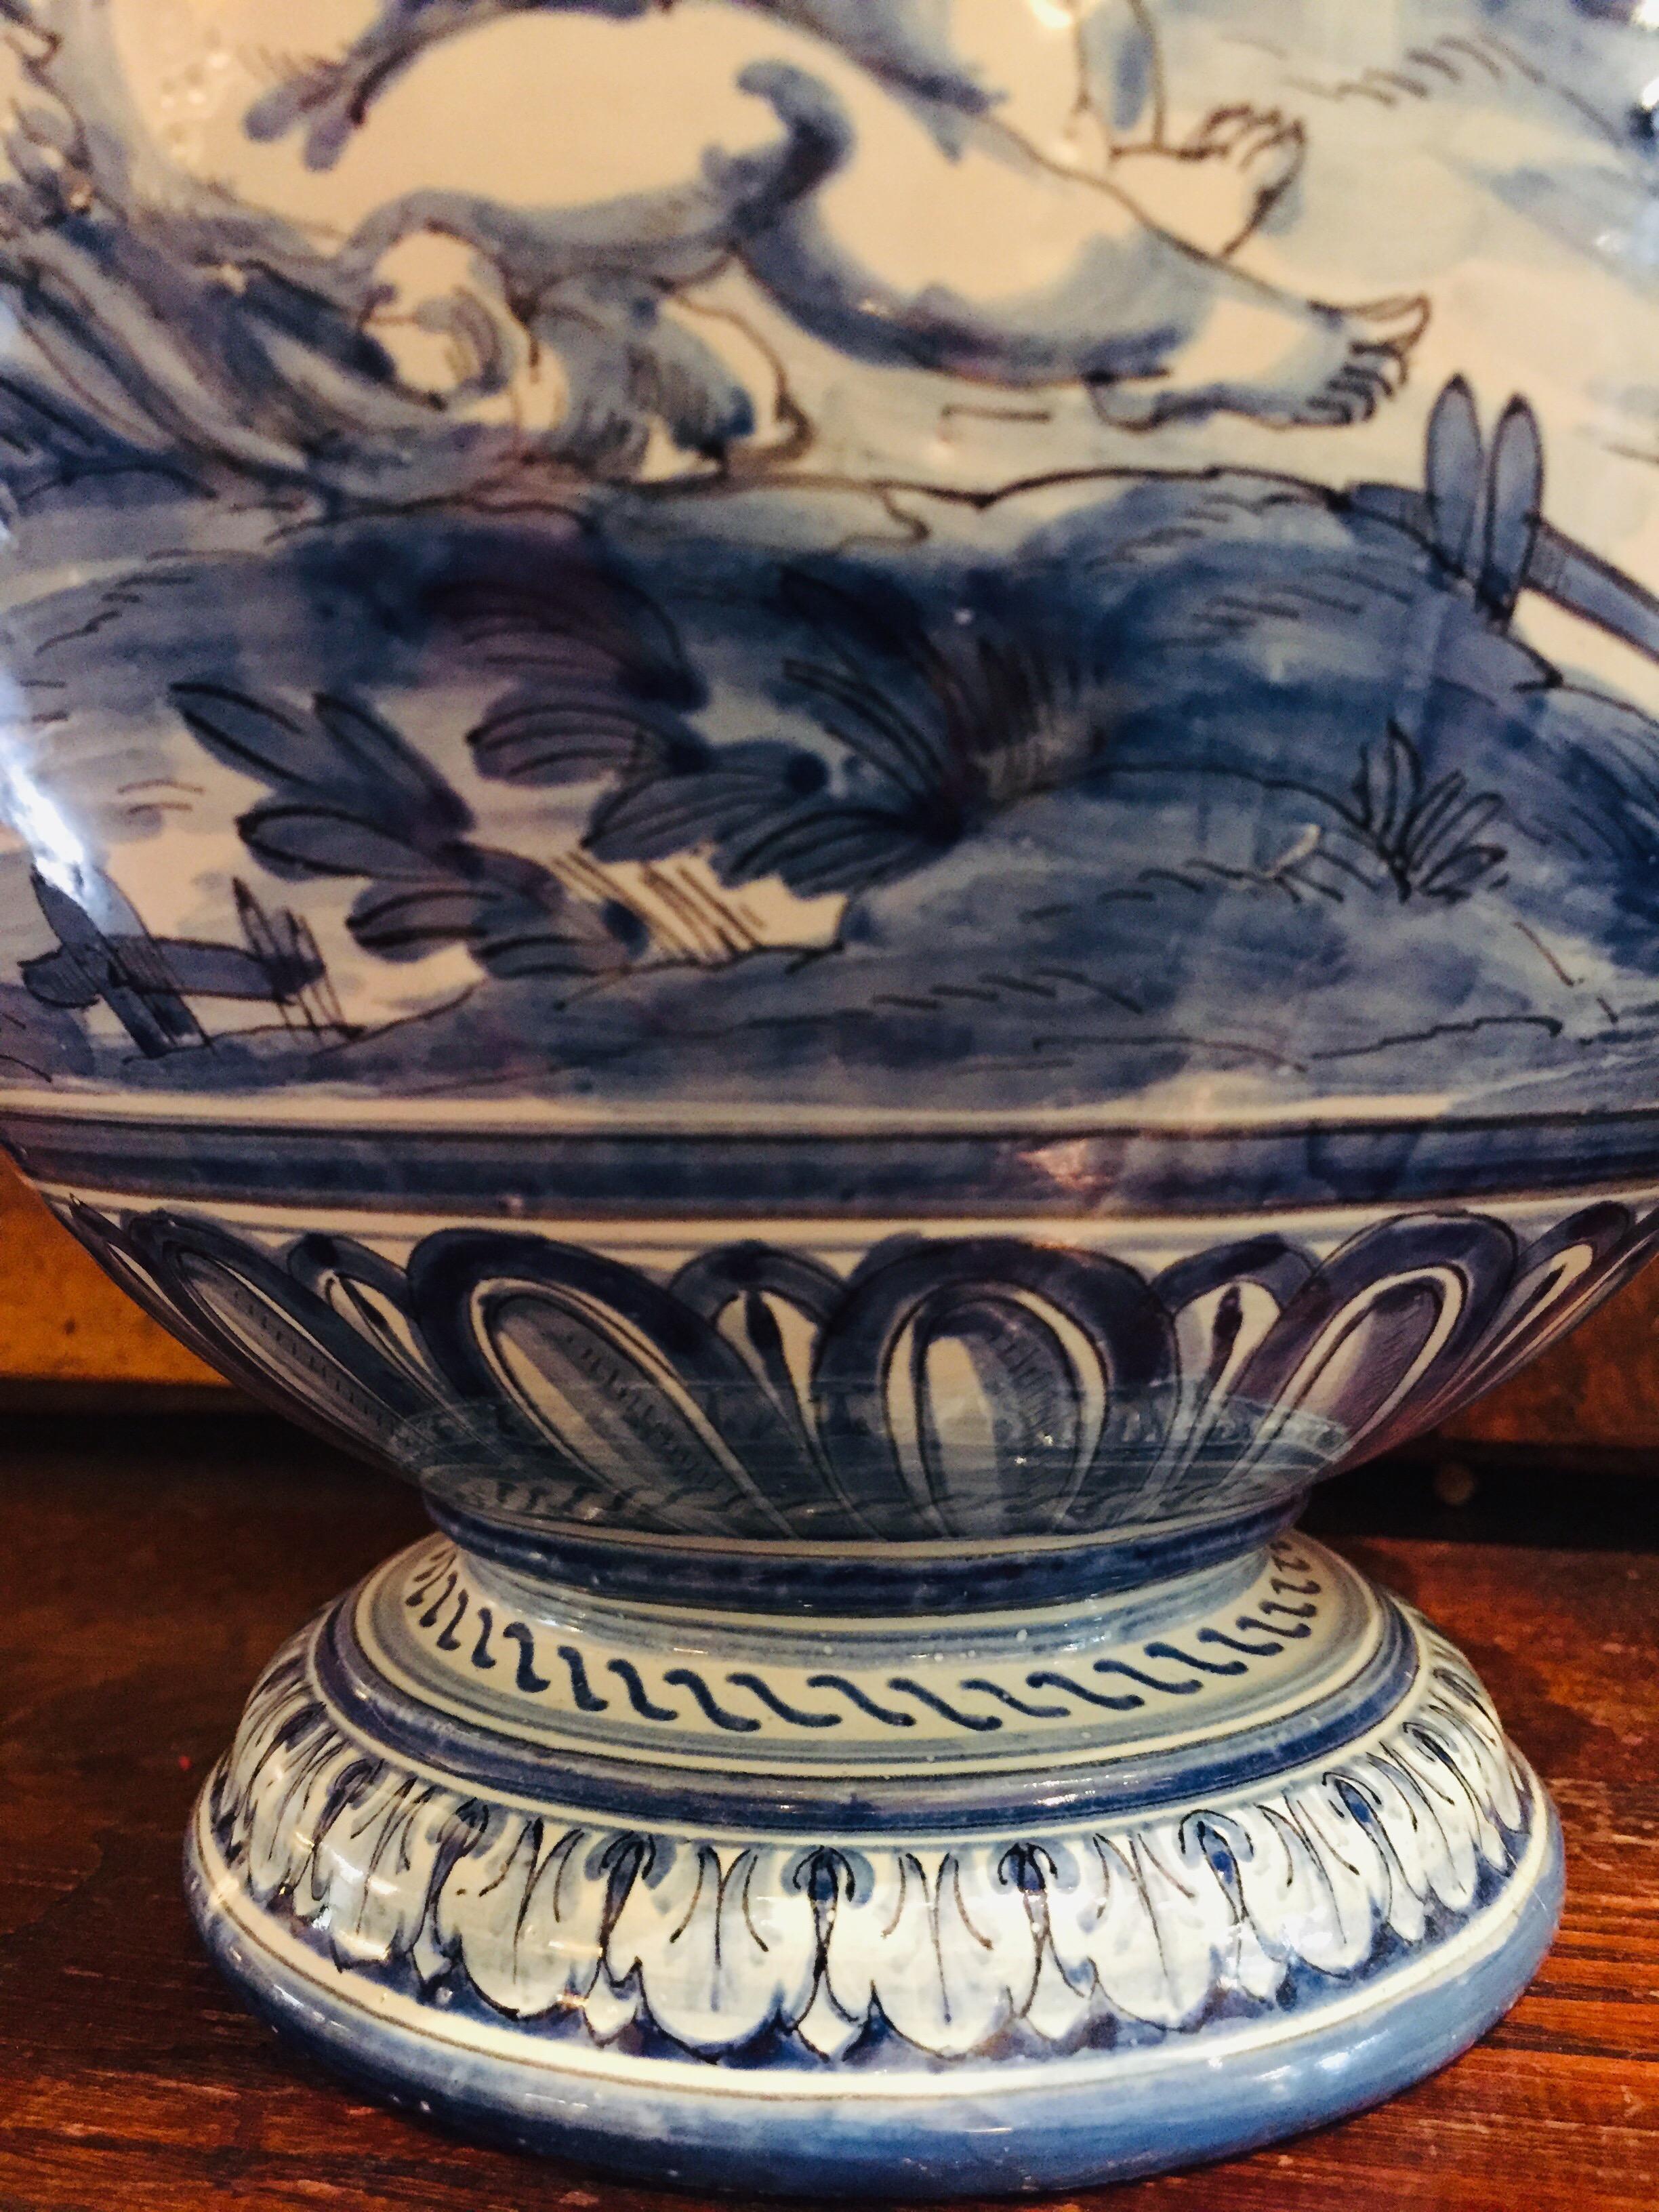 Pair of Italian Vases 20th Century Blue and White Maiolica Savona Vases 9